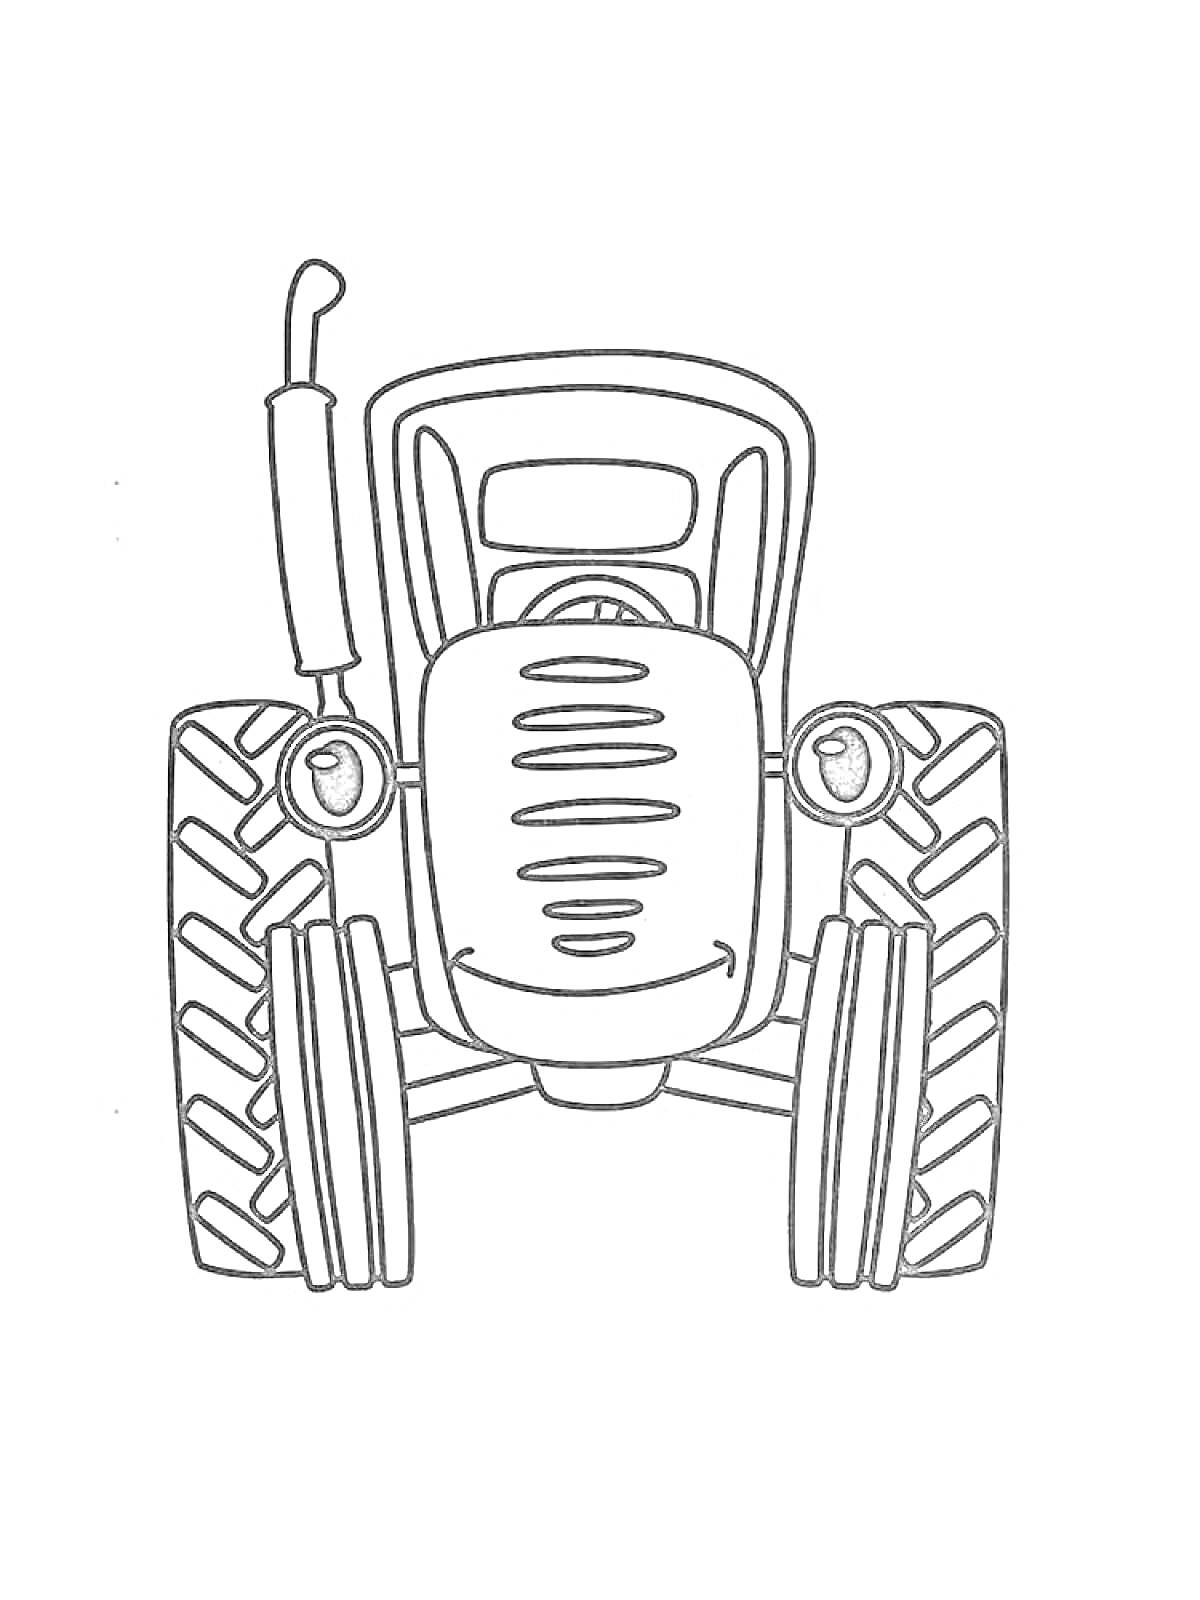 Раскраска Трактор, вид спереди, с большими колесами, фарой и трубой на капоте